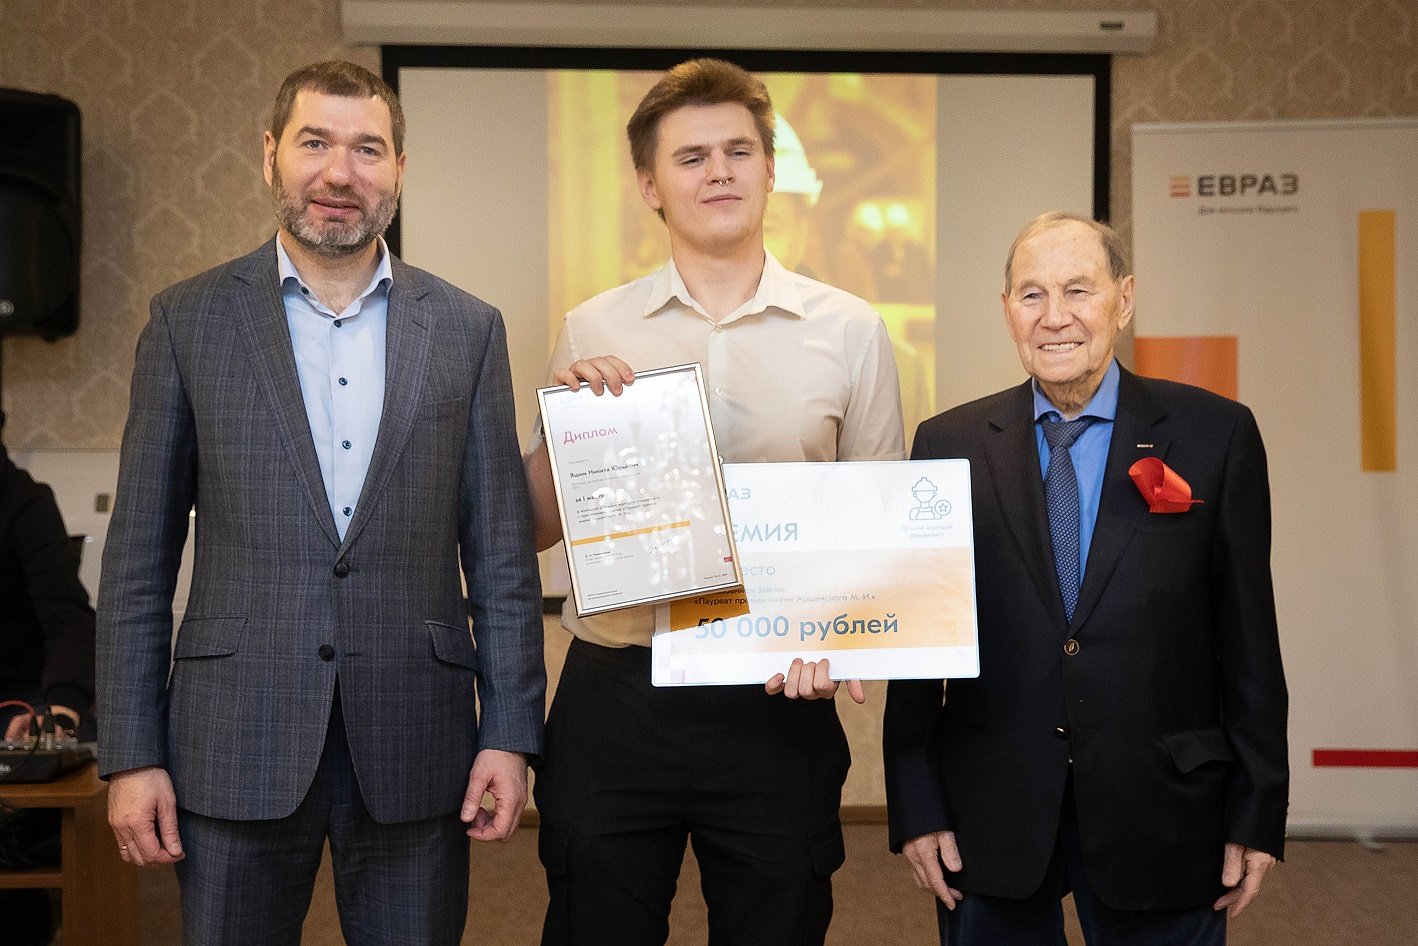 Три сотрудника ЕВРАЗ НТМК награждены премией имени почетного гражданина Свердловской области Михаила Аршанского